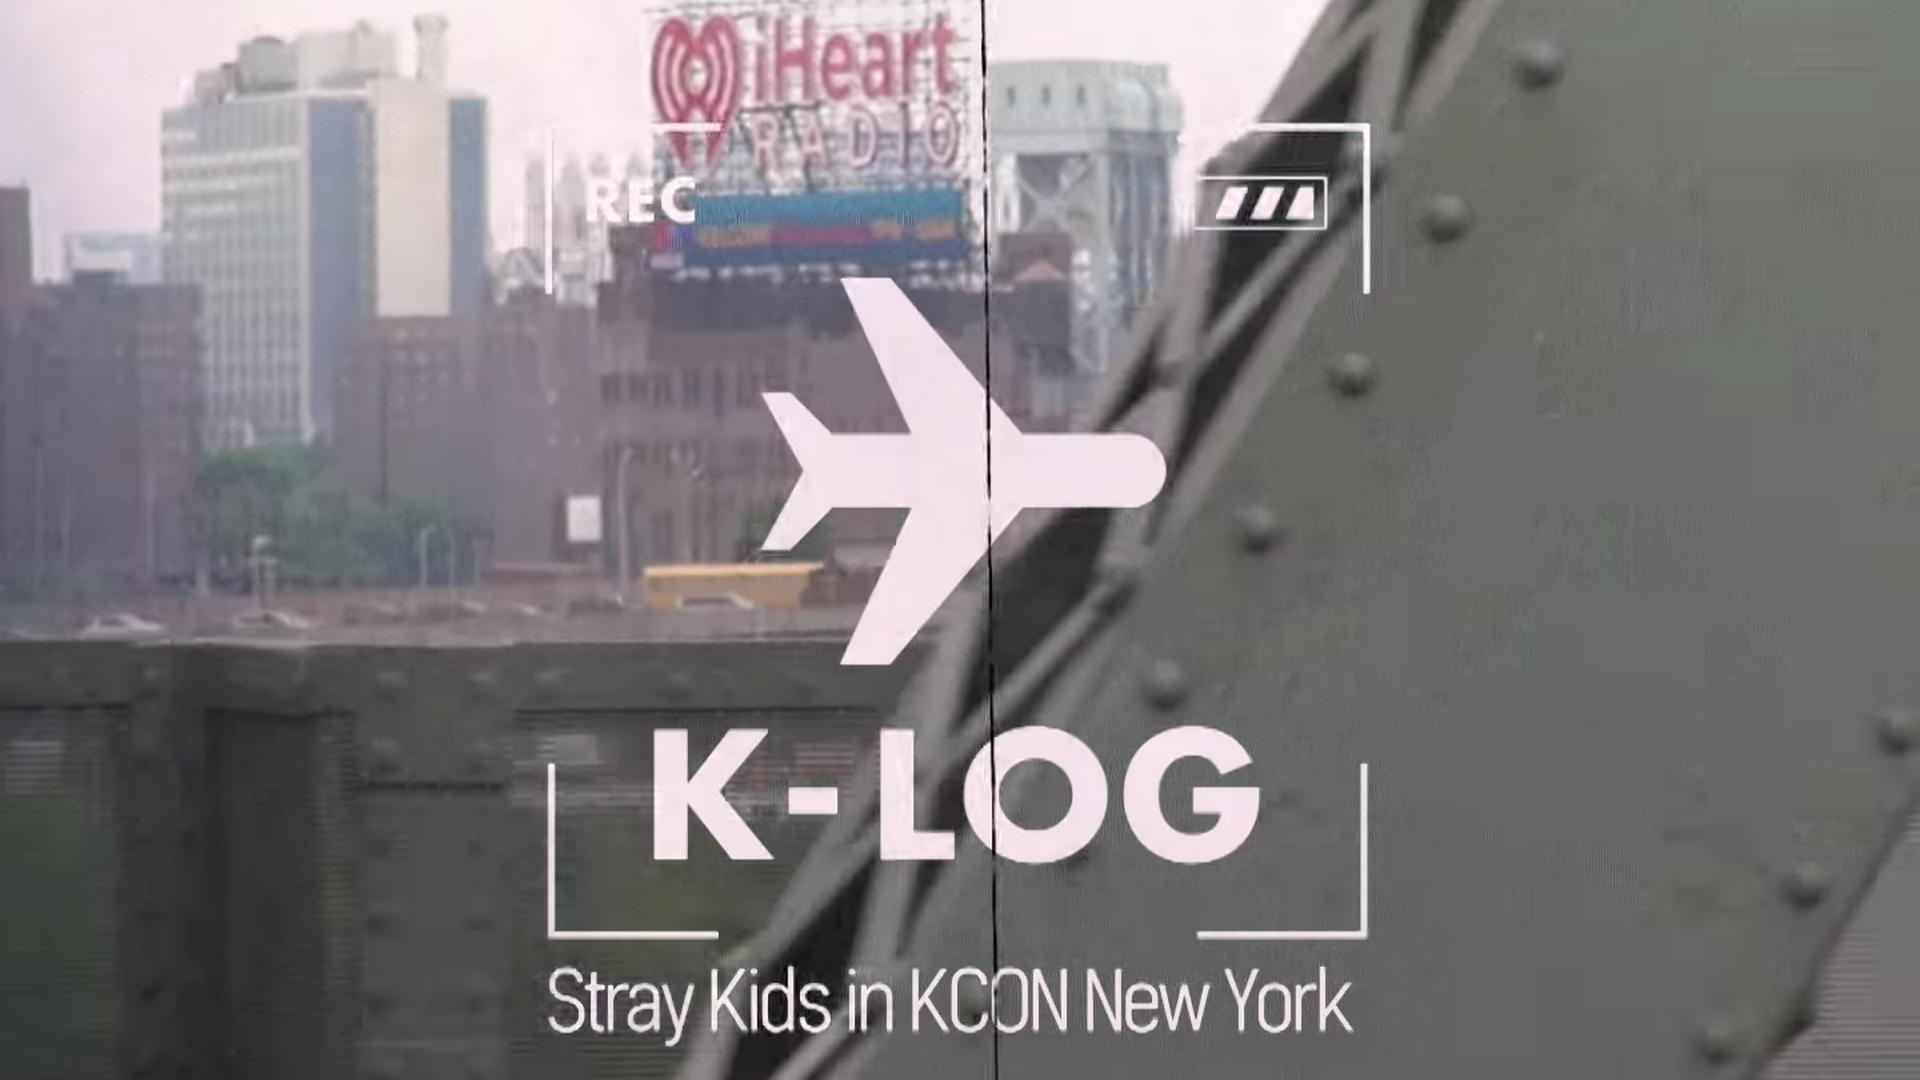 Stray Kids: K-LOG in New York